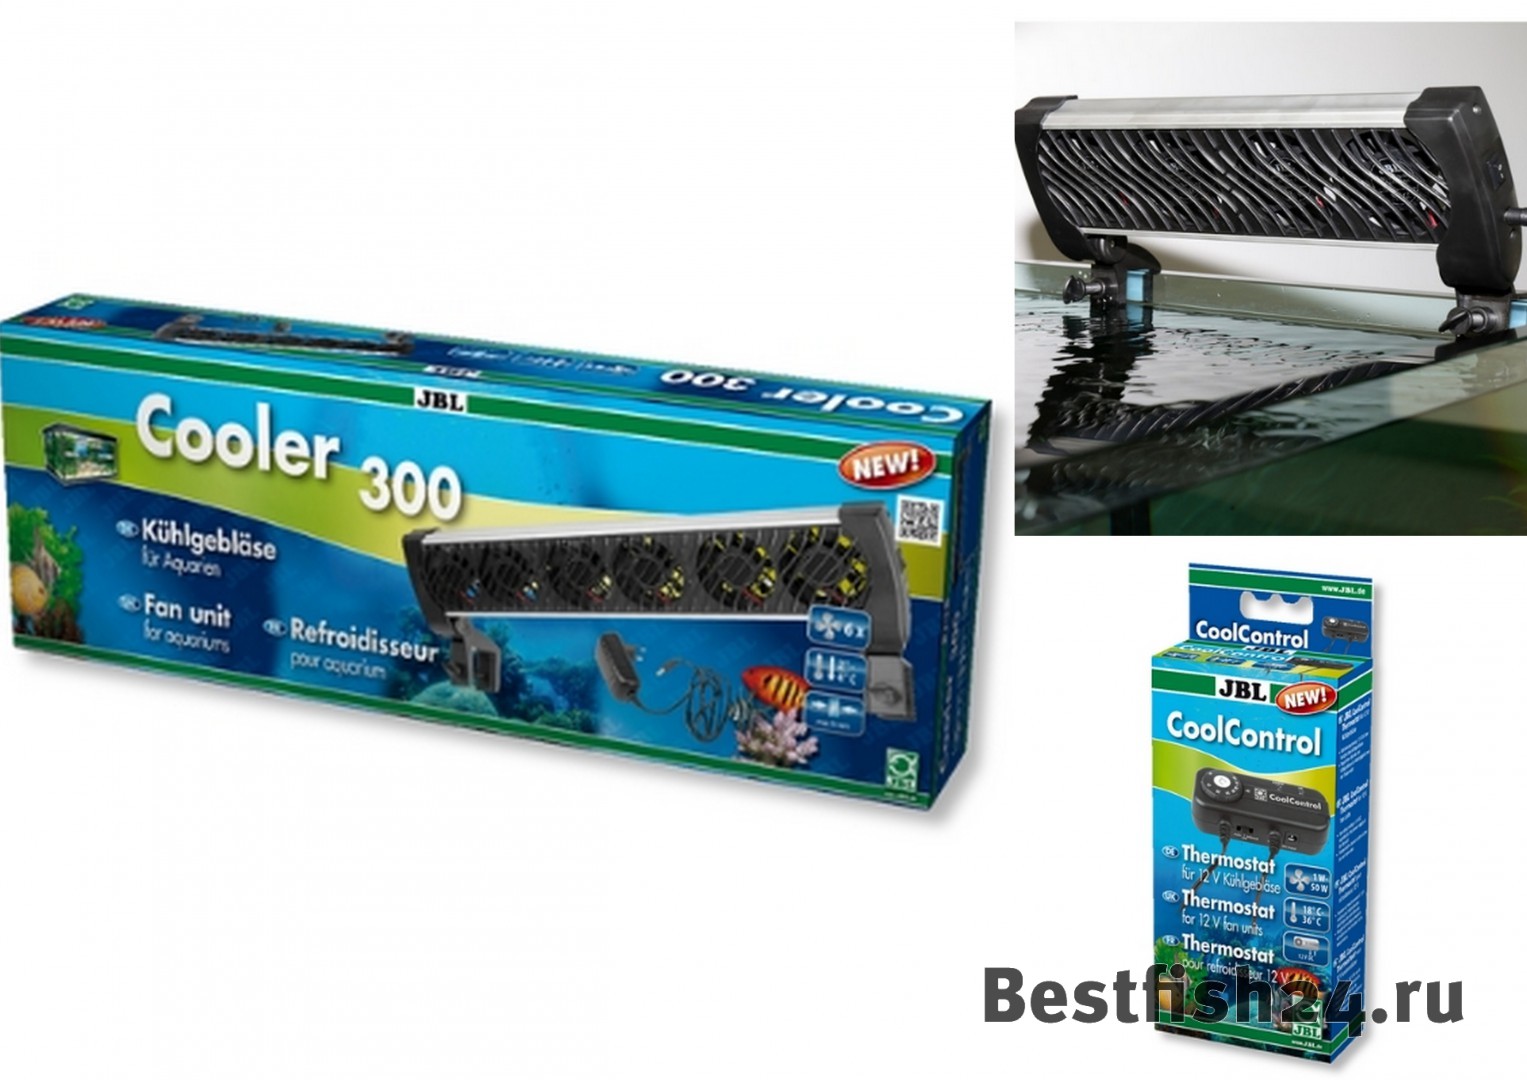 Низкая цена! Купить 1б) JBL Cooler мощность:15,3 Вт, вентилятор для охлаждения воды в аквариумах 200-300л 8660 руб.! В наличии более 280 видов аквариумных рыбок и 4000 для аквариума!